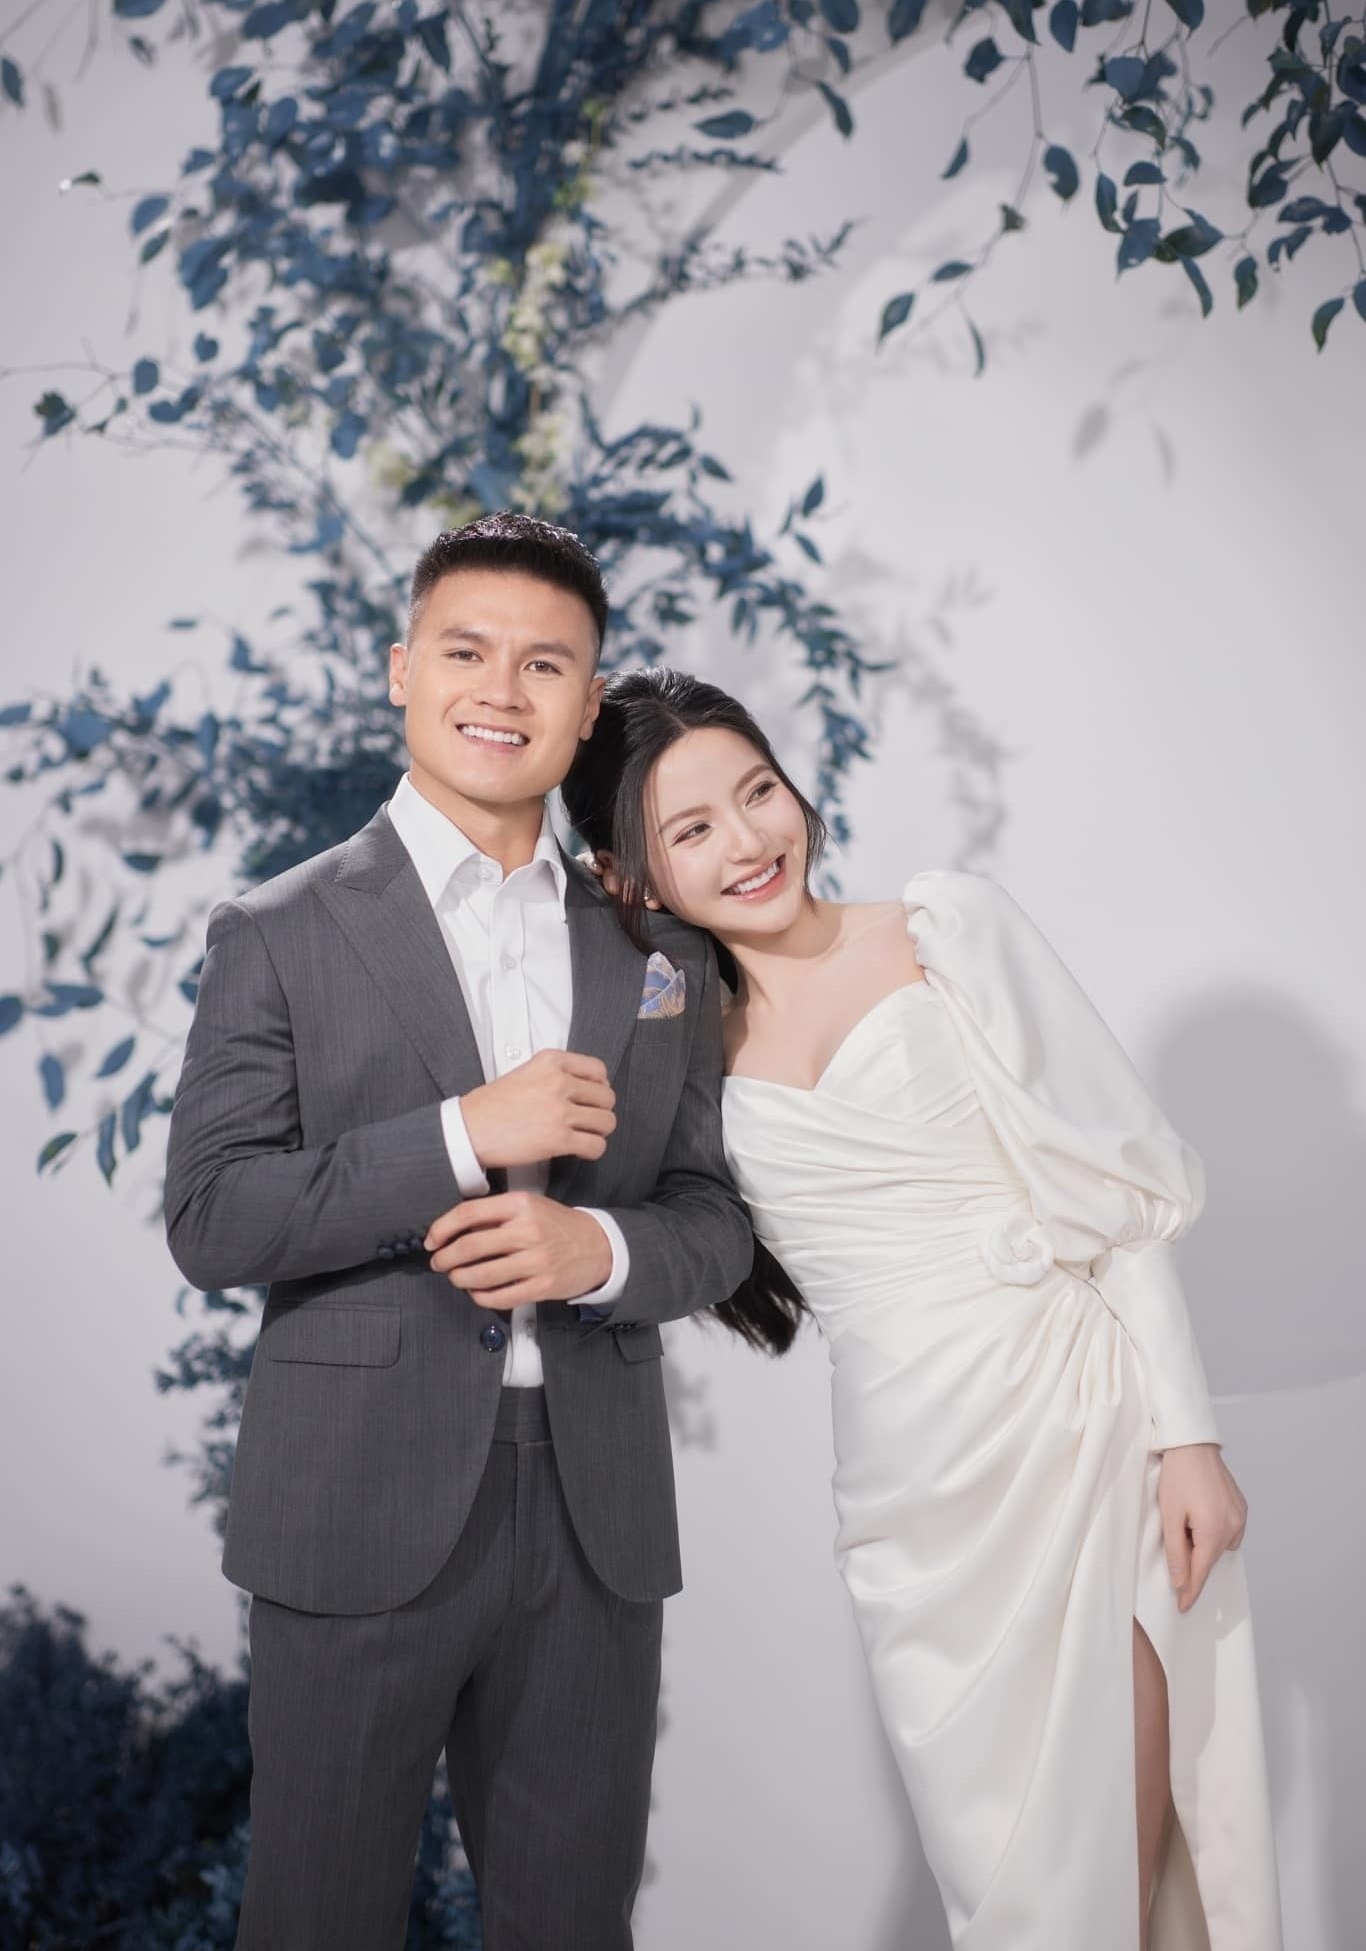 Hành trình từ yêu đến cưới của Quang Hải và Chu Thanh Huyền - ảnh 2